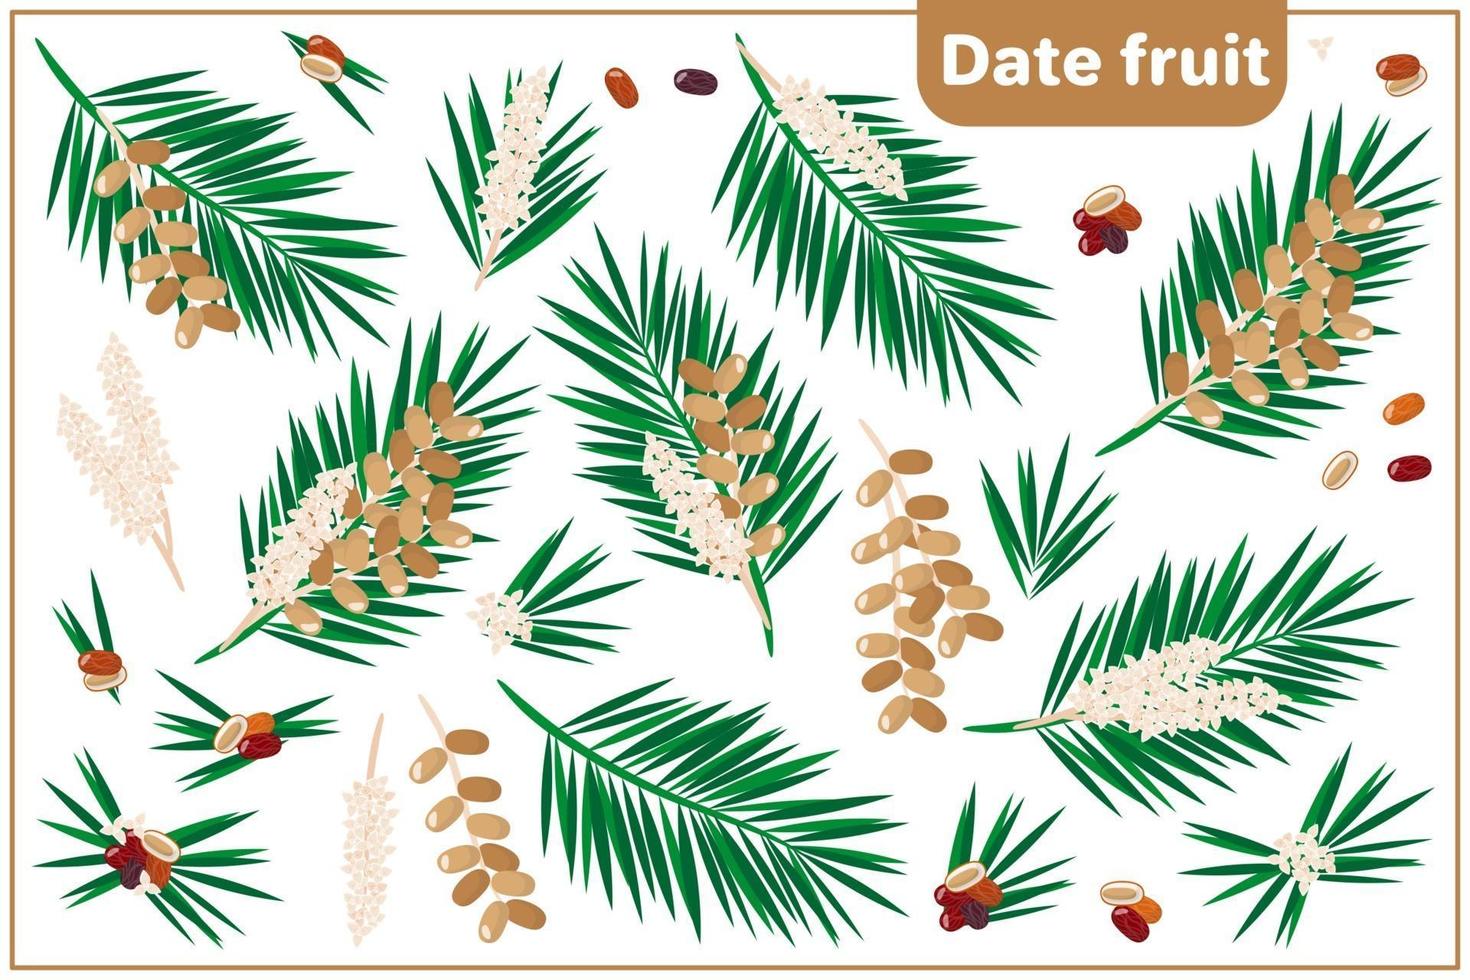 serie di illustrazioni vettoriali di cartone animato con frutta data frutta esotica, fiori e foglie isolati su priorità bassa bianca